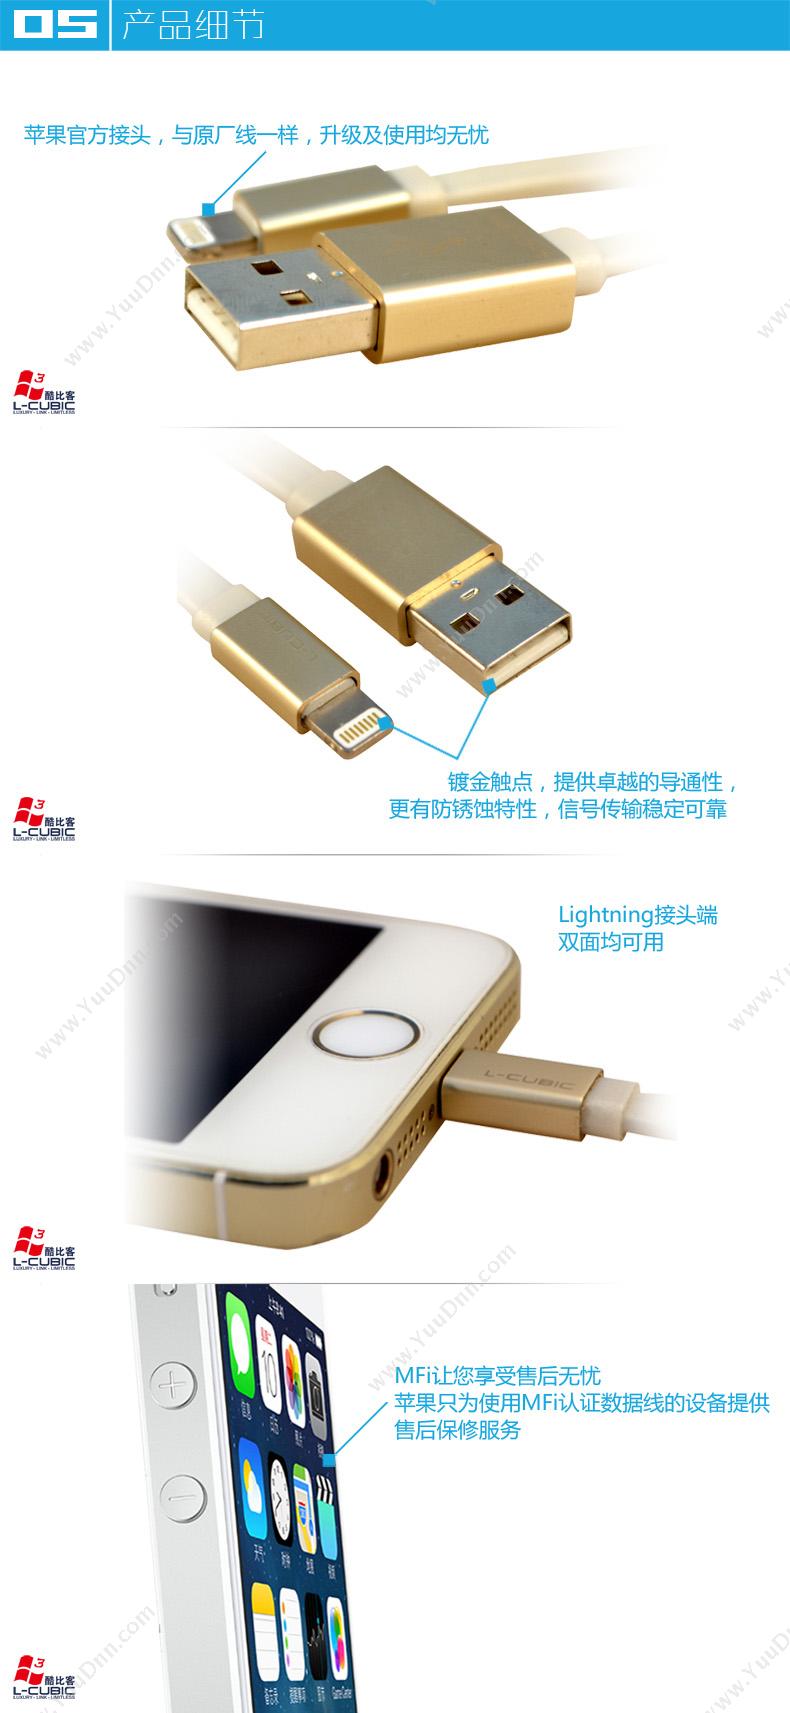 酷比客 L-Cubic LCIMAPSBMCWHSV-2M  苹果数据线 金属外壳/白色扁线 银色 1根 USB AM-Lightning用于iPhone5 iPhone5s iPhone6 Plus iPad4 数据传输与充电 苹果数据线